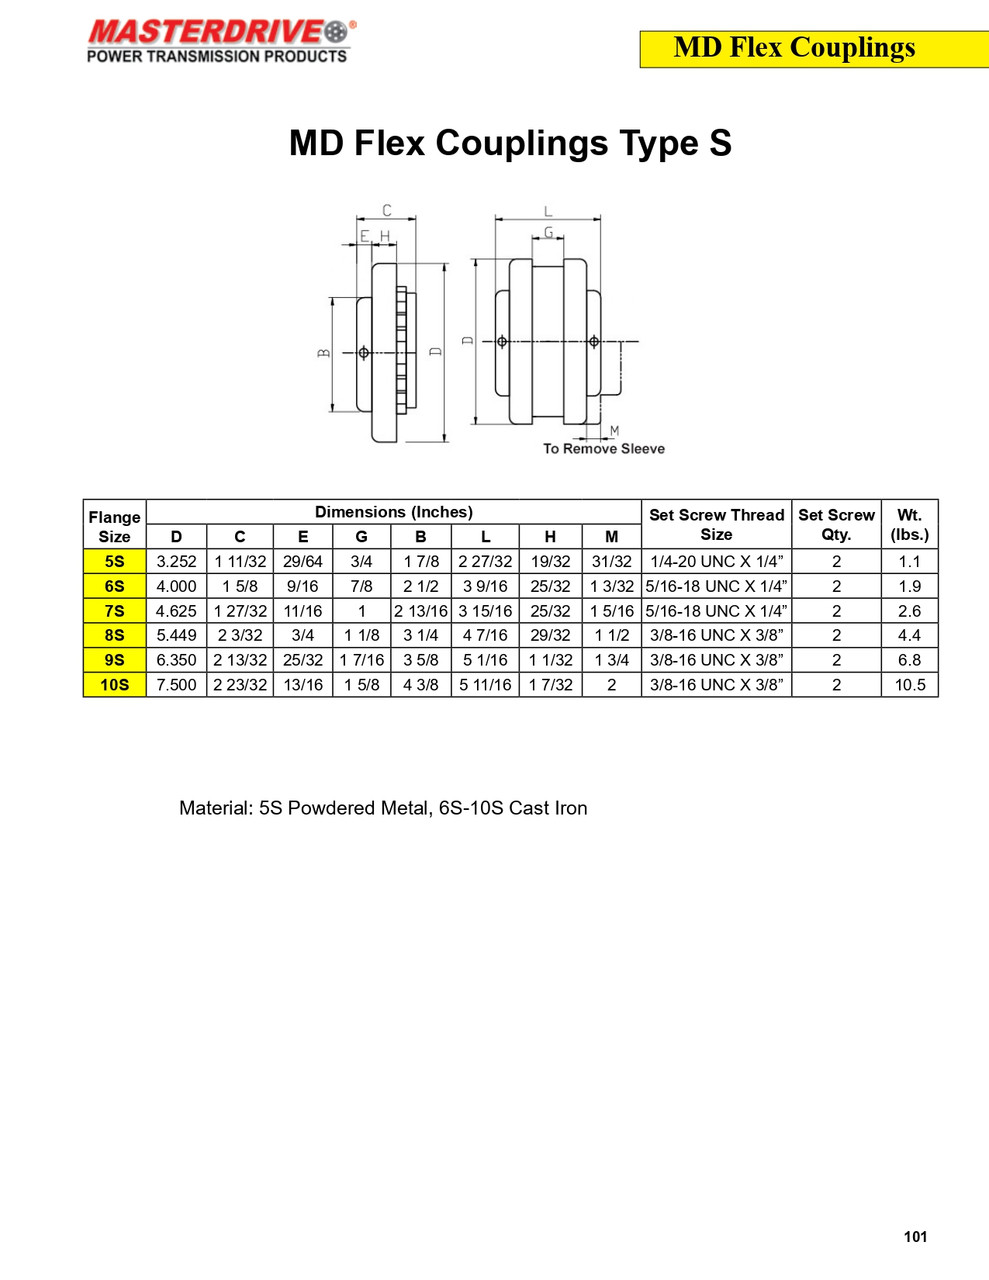 #8 x 1-3/16" Shaft Sure-Flex® Coupling Half   8S-1-3/16